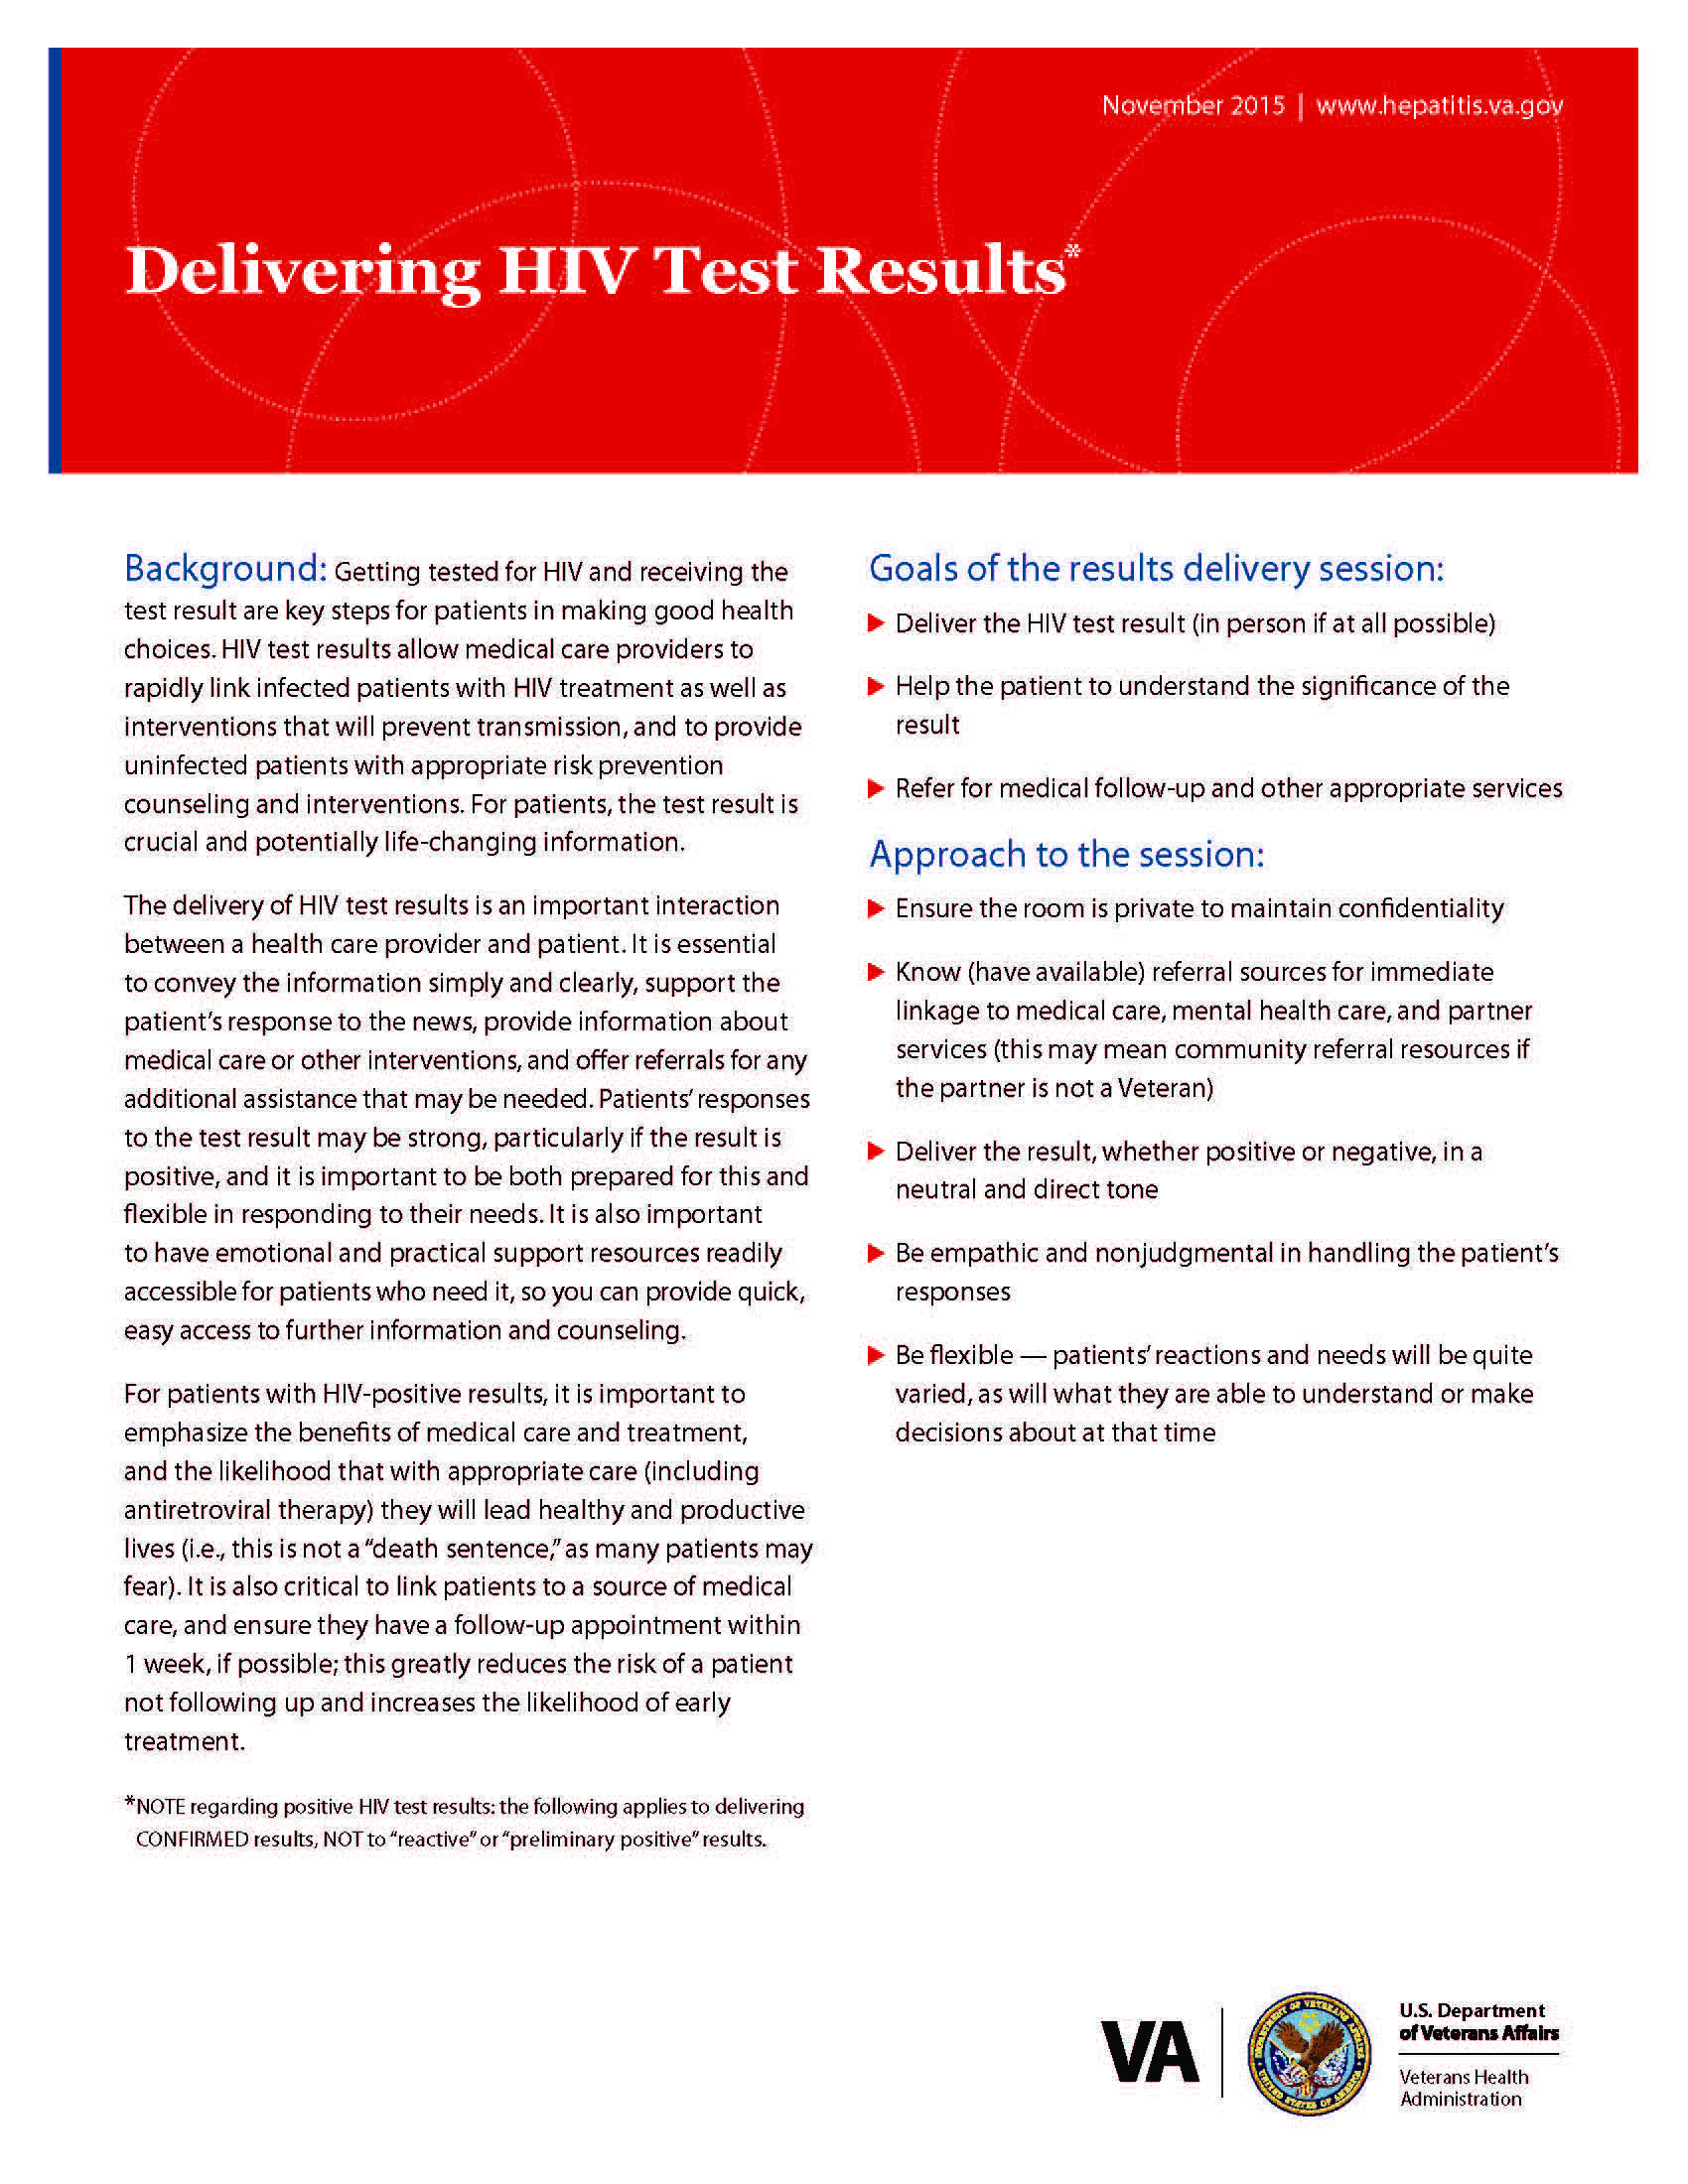 Delivering HIV Test Results